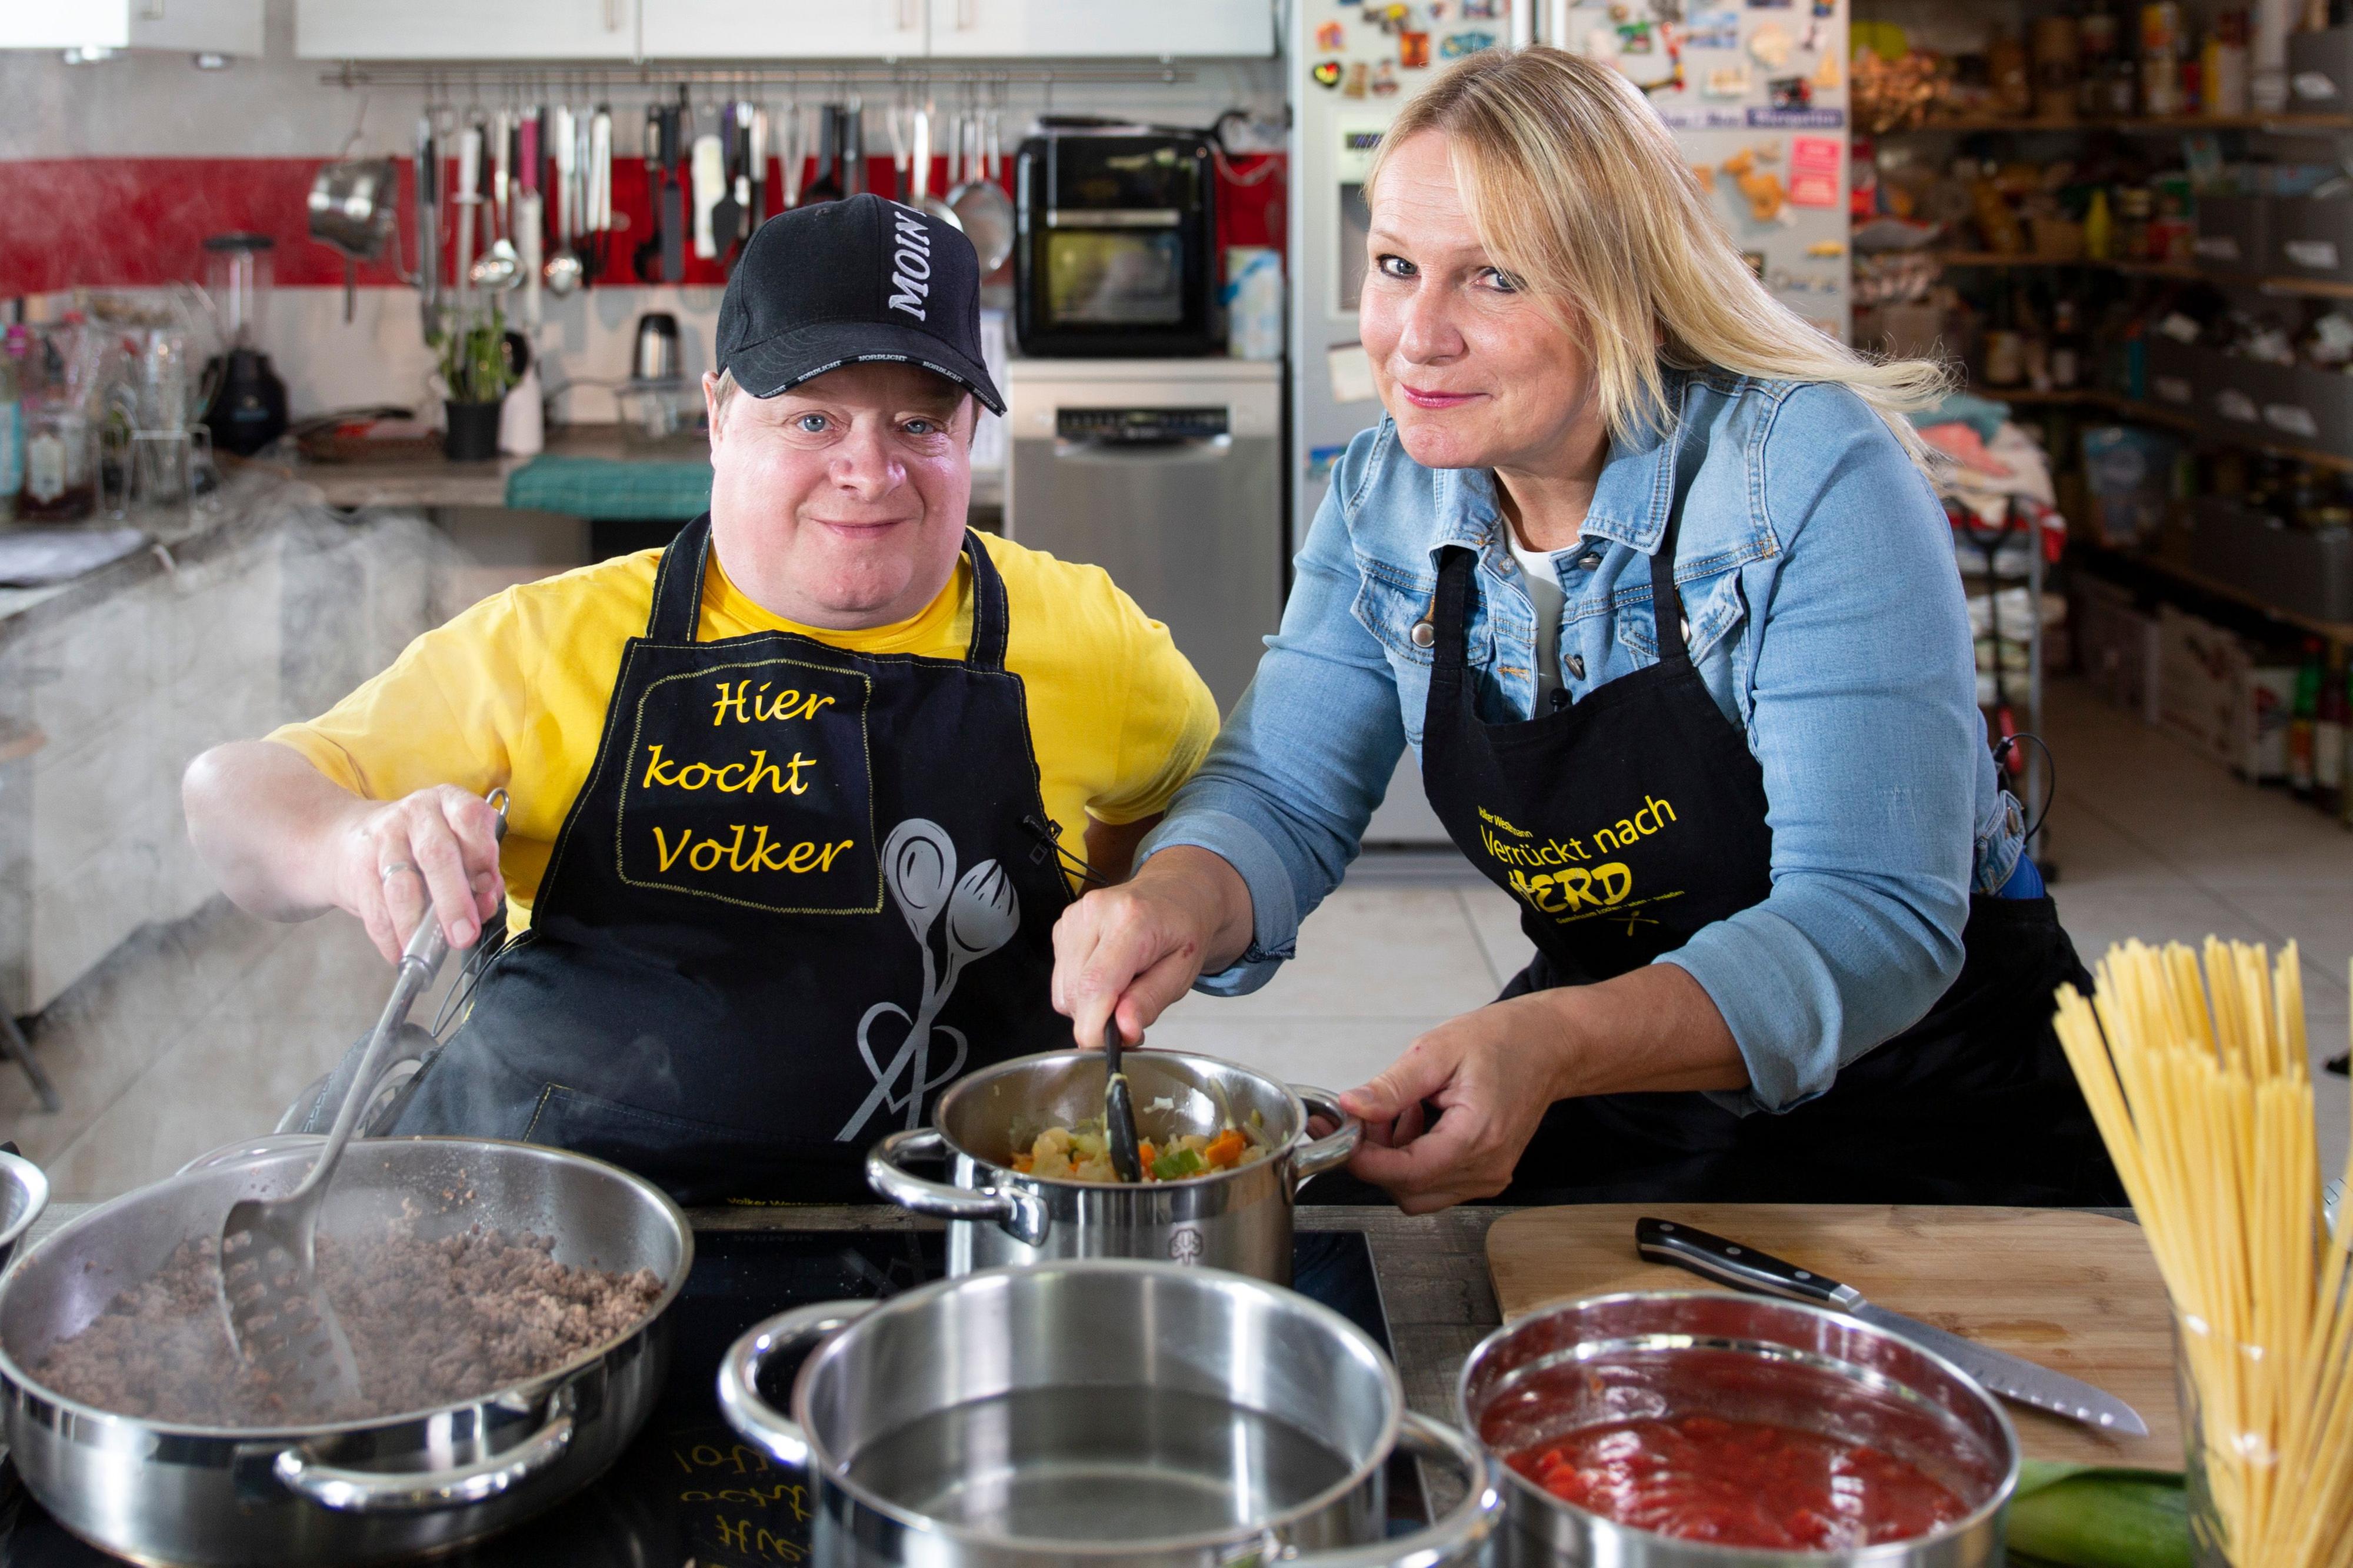 Kochen gemeinsam: Volker Westermann und Katrin Degenhardt